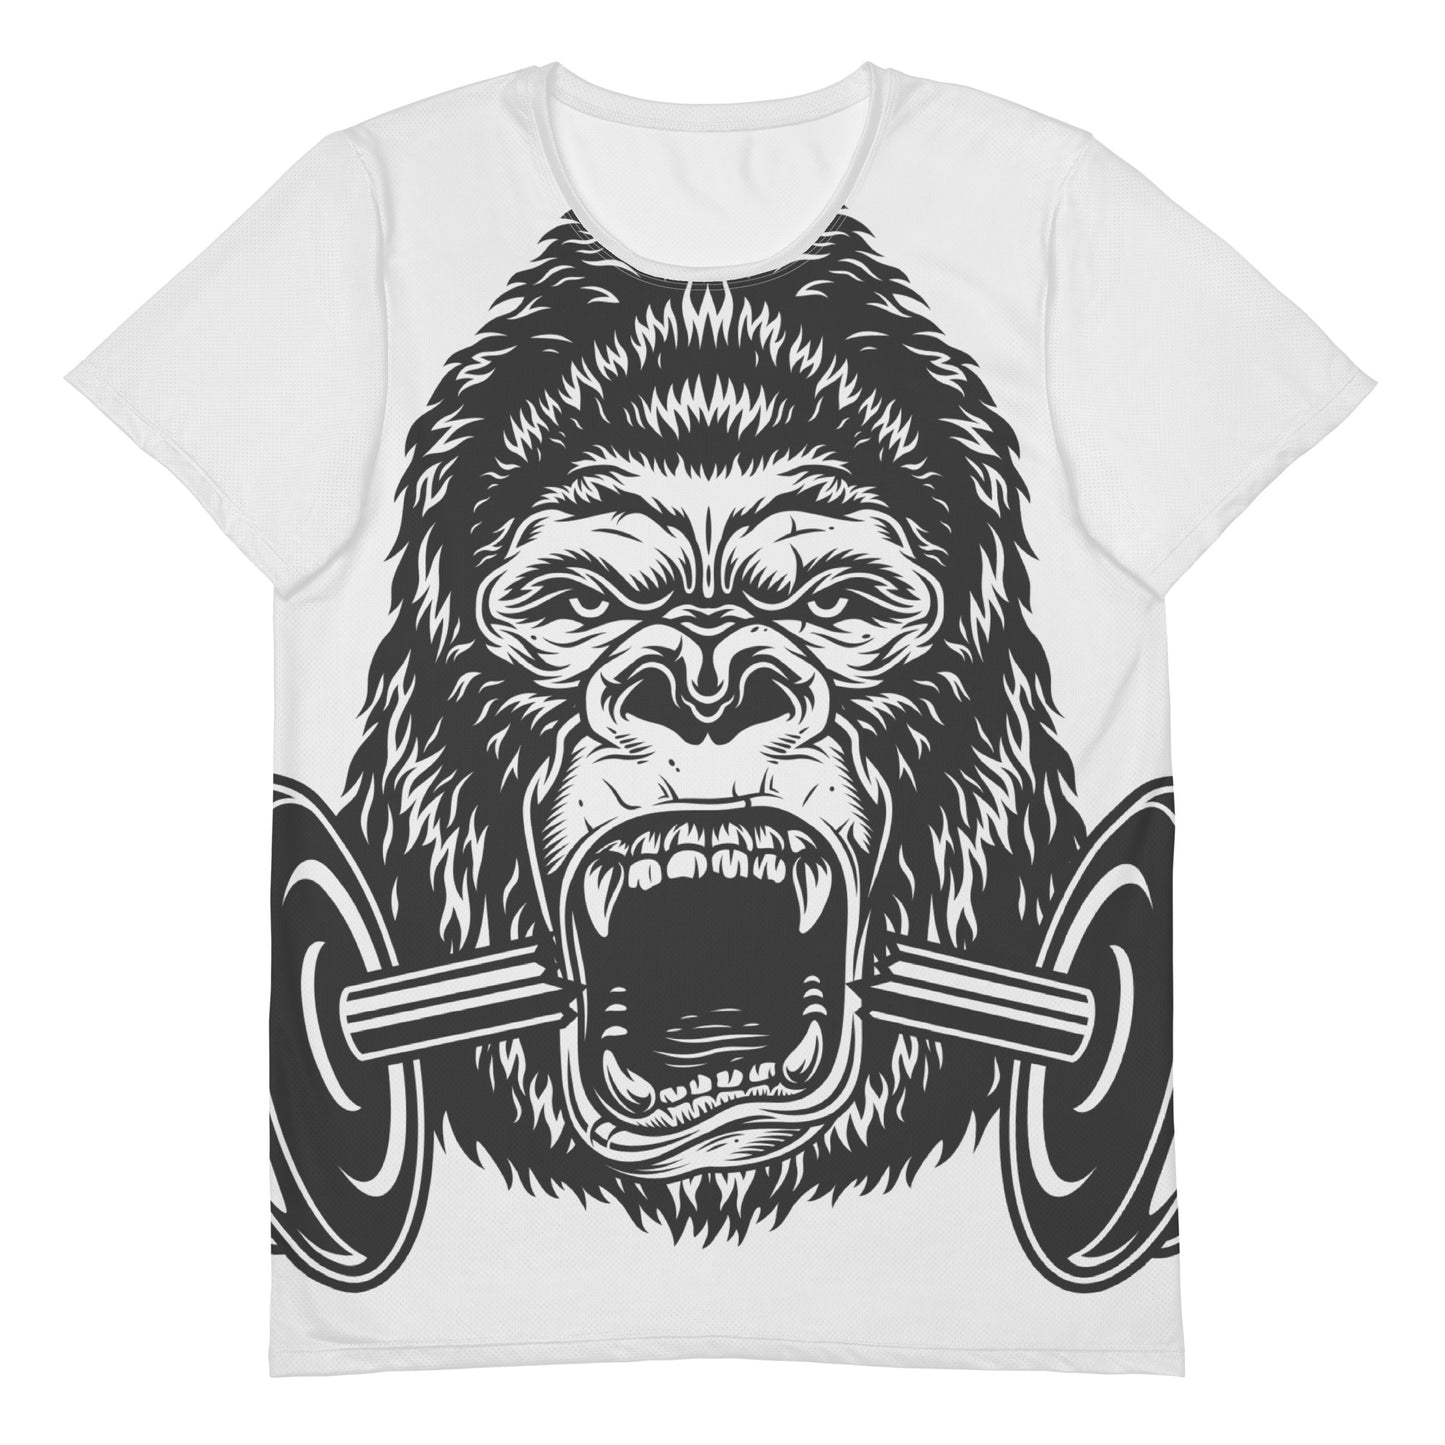 "Gorilla" men's training shirt